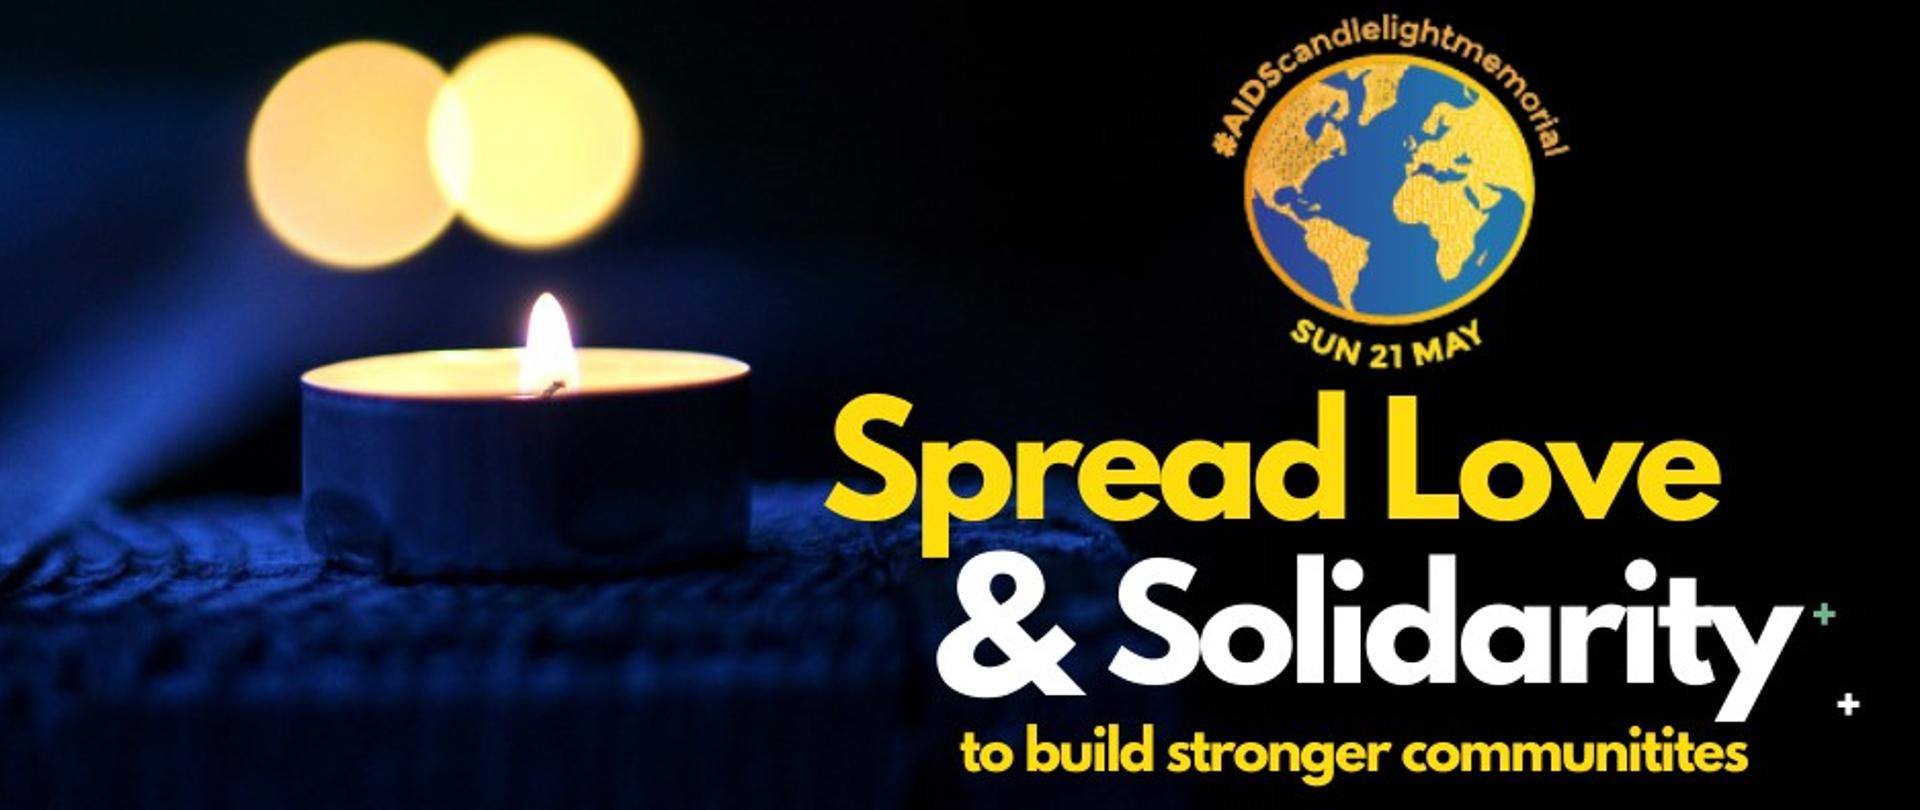 Po lewej stronie znajduje się mała, zapalona świeczka, której blask rozświetla mrok. Po prawej stronie znajduje się grafika kuli ziemskiej, a pod nią napis "SUN 21 MAY Spread Love &Solidarity to build stronger communites"